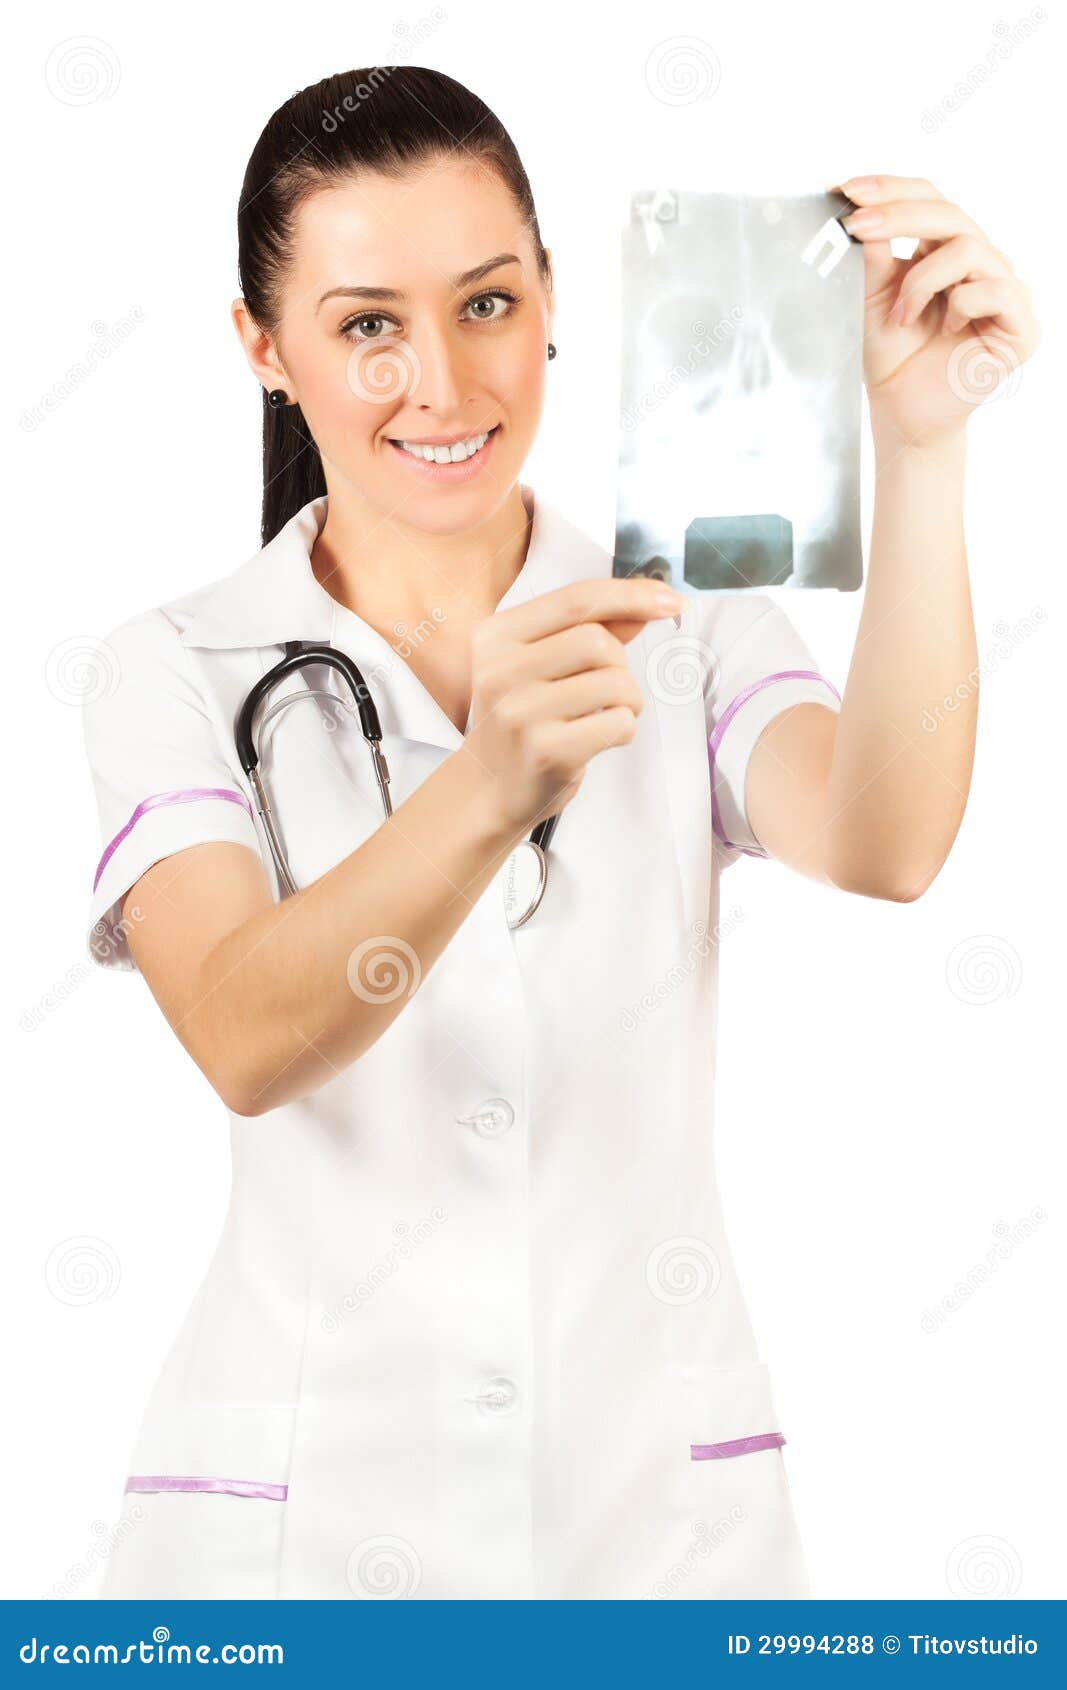 woman doctor is looking roentgenogram